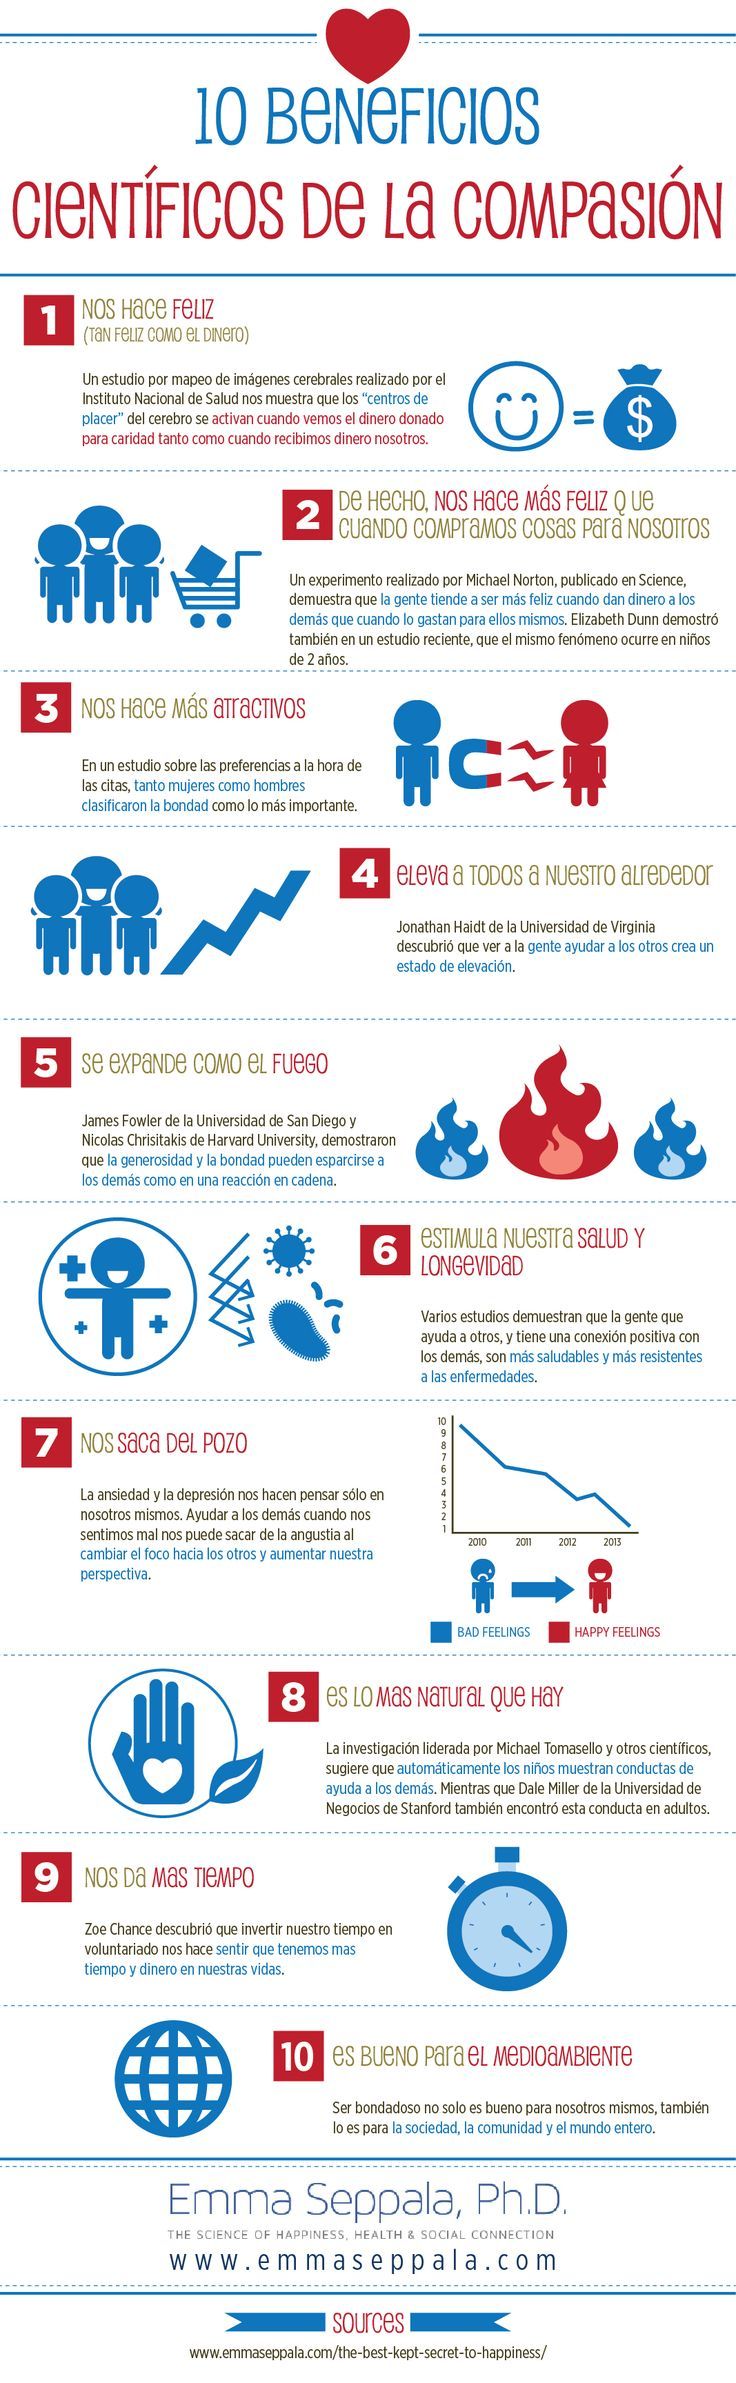 Psychology-Infographic-10-beneficios-cientificos-de-la-compasion-Fuente Psychology Infographic : 10 #beneficios #científicos #de #la #compasión #Fuente: #www.emmaseppala.com ##infografia ##i...